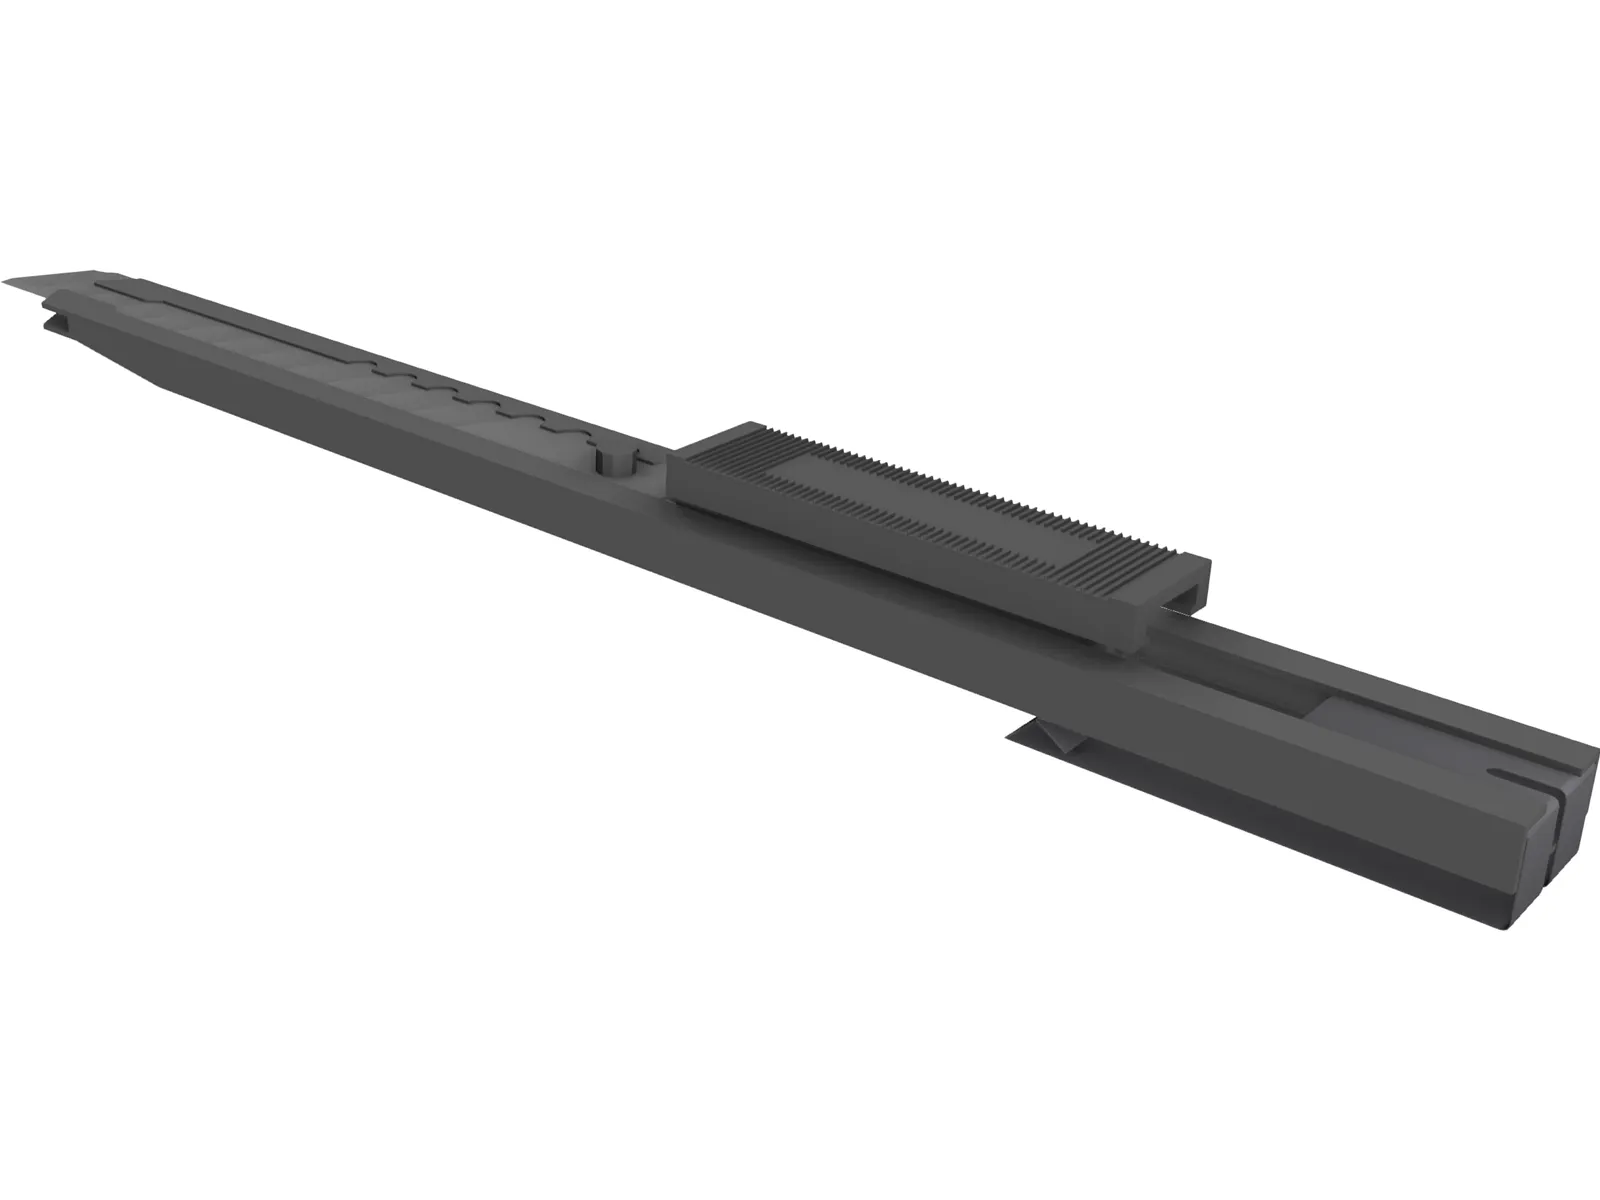 Olfa Stanley Knife svr-2 3D Model